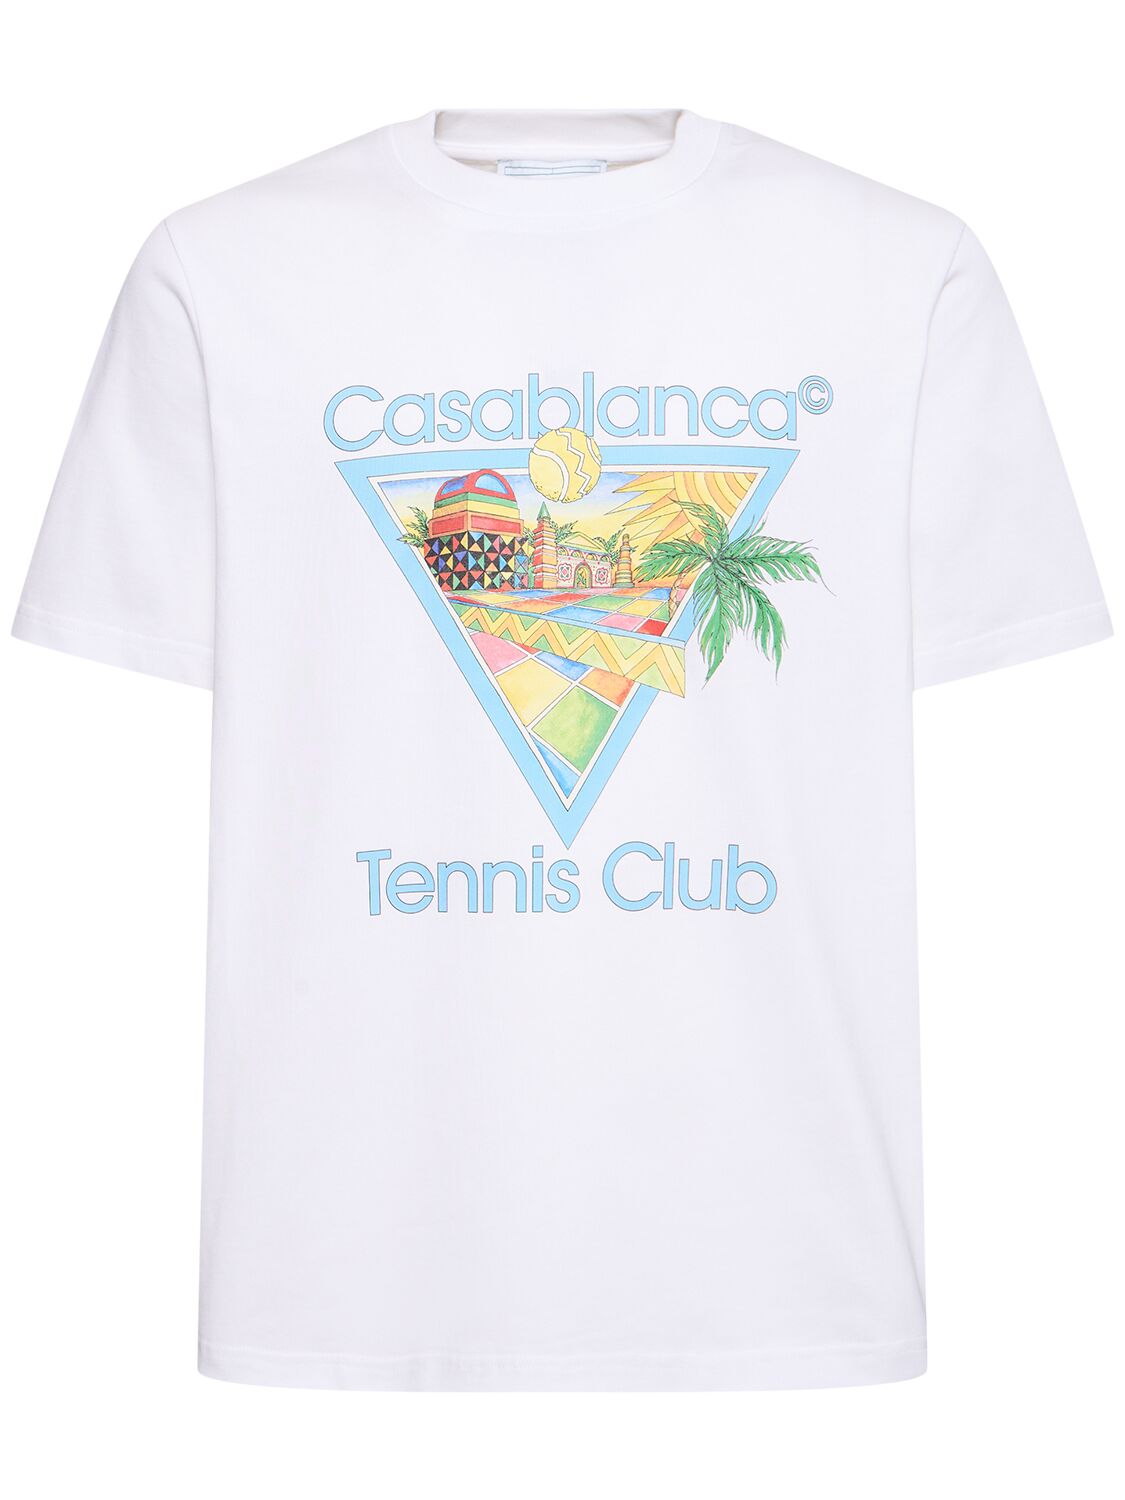 Tennis Club Organic Cotton T-shirt